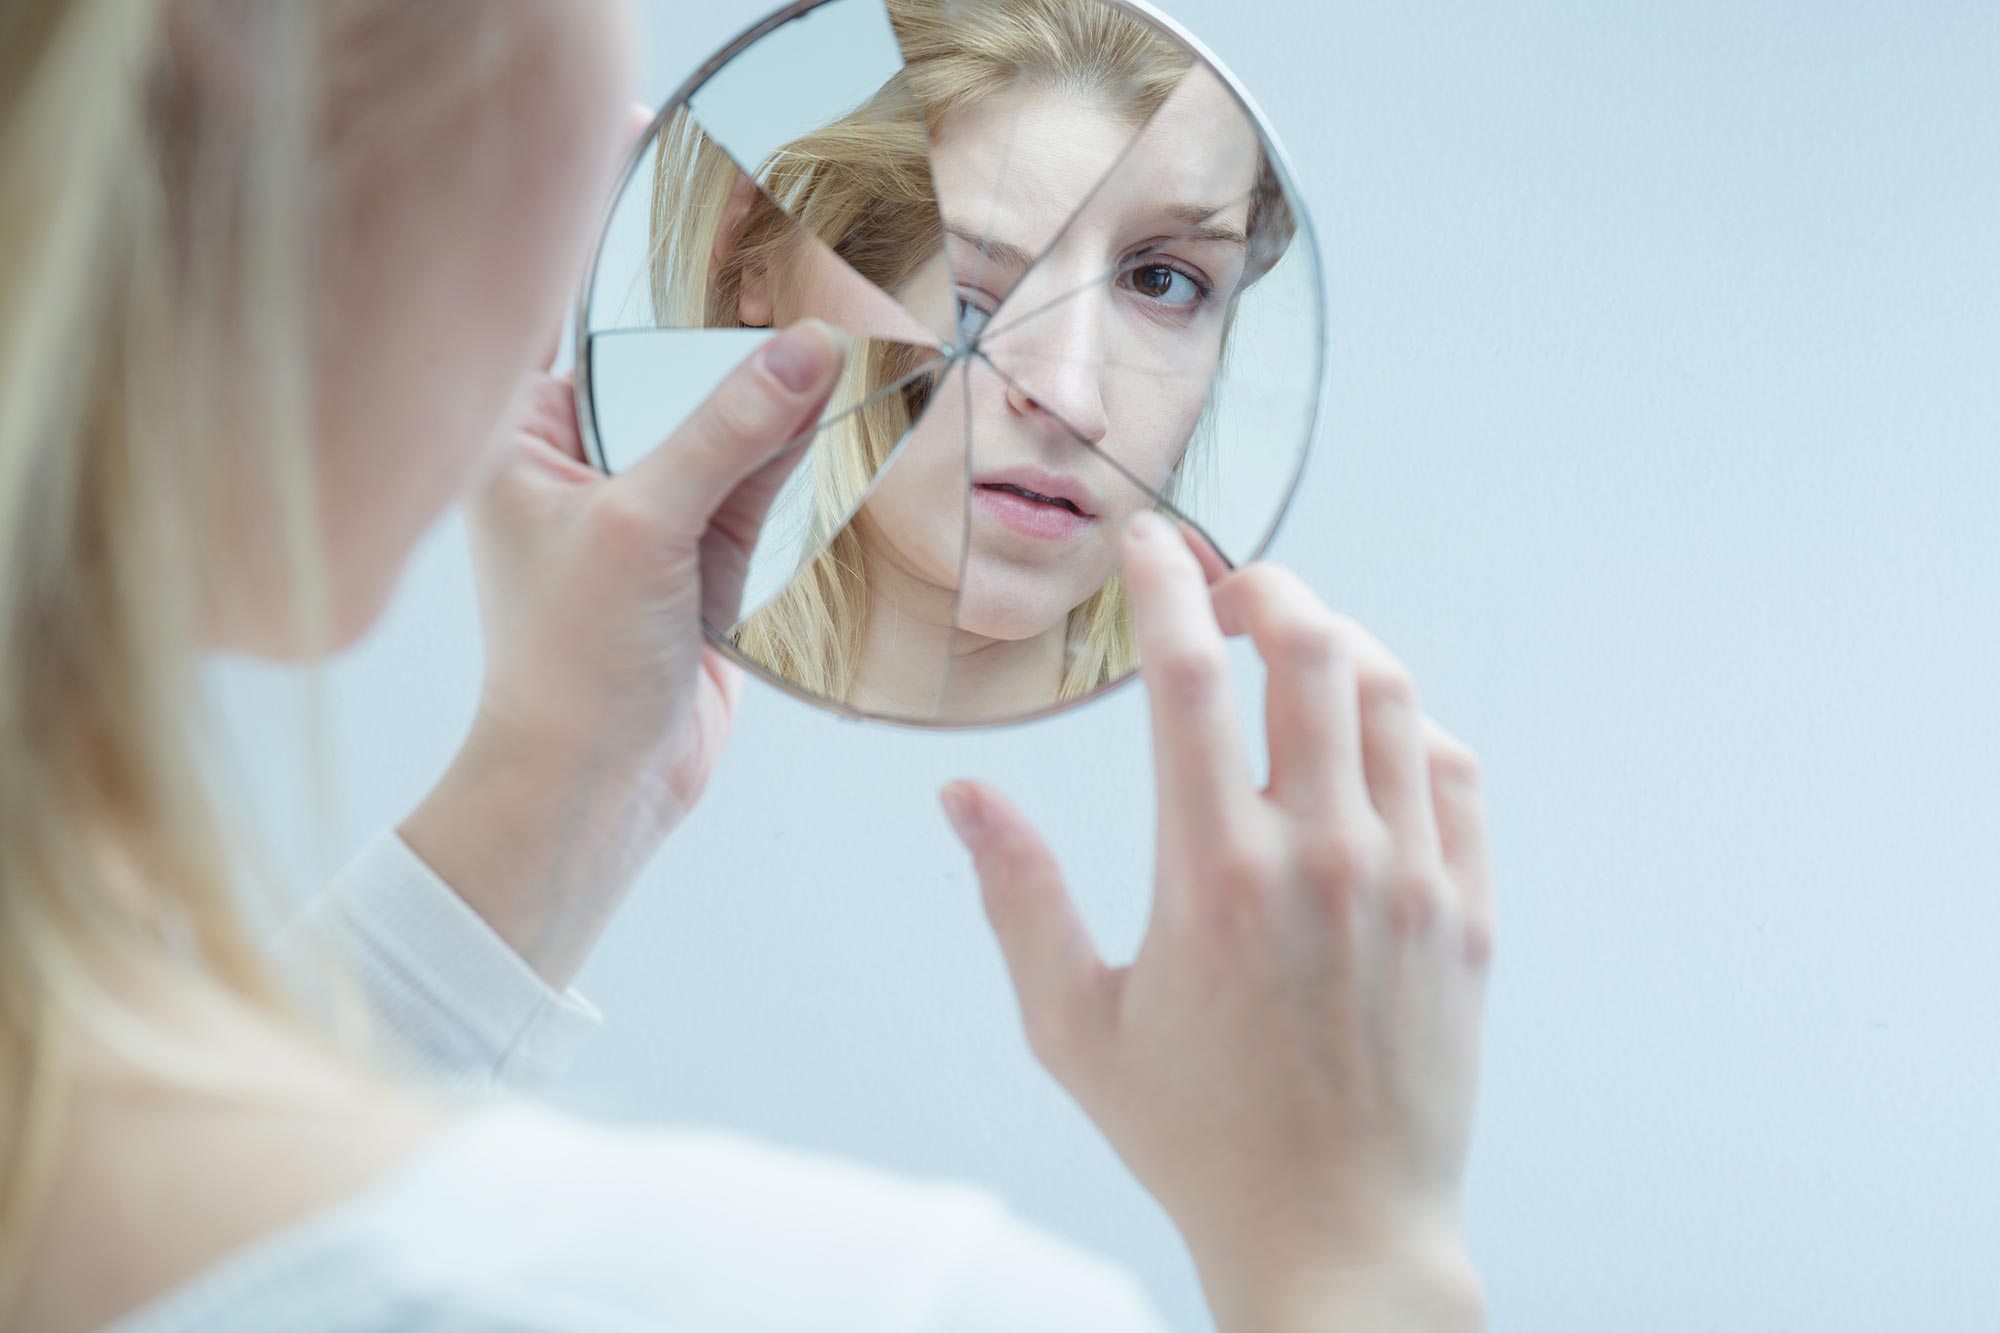 kvinna tittar på sig själv i en spegel som är spräckt, spegelbilden blir förvrängd Akavia Aspekt